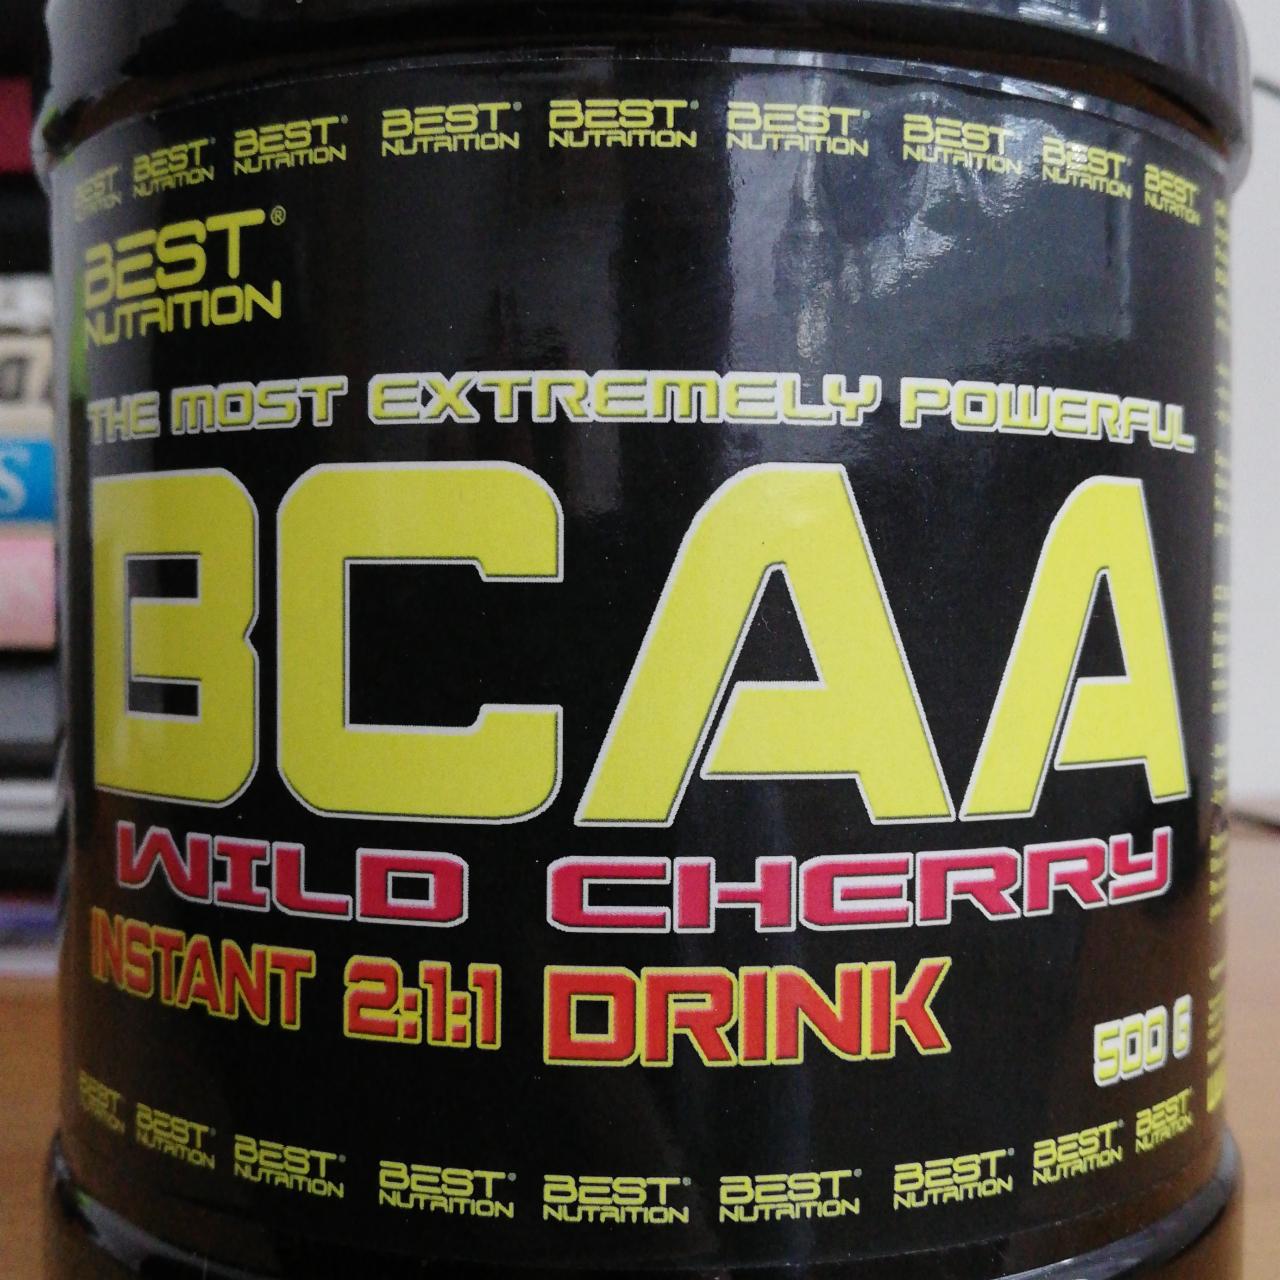 Fotografie - BCAA Wild cherry Instant 2:1:1 Drink Best Nutrition